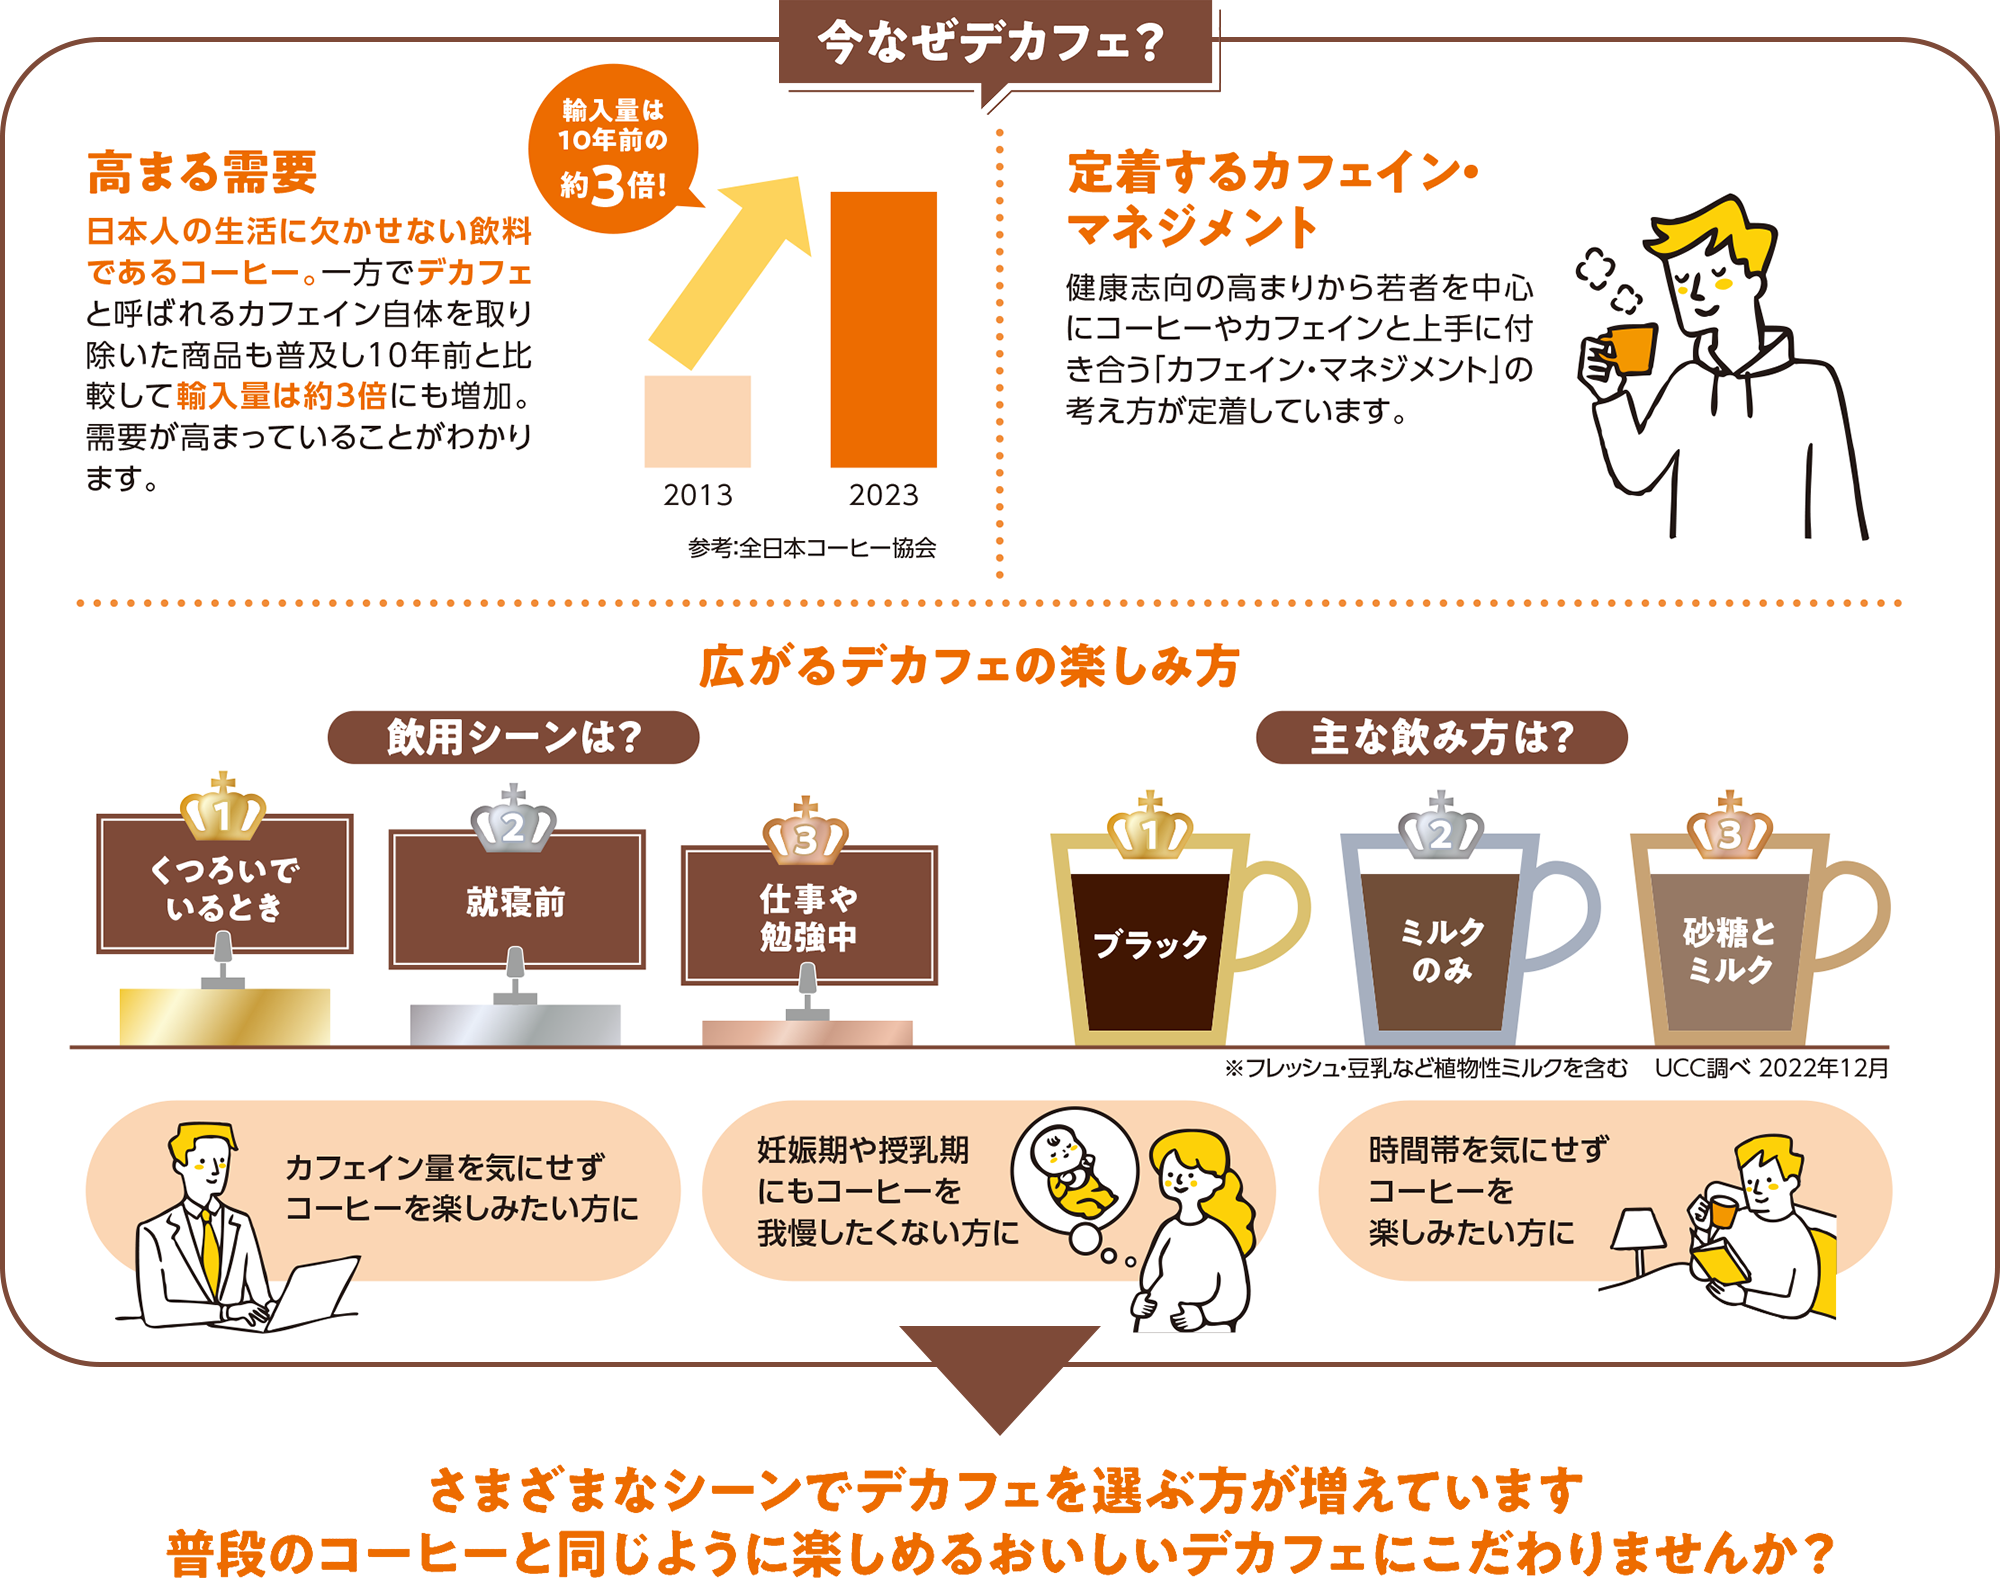 今なぜデカフェ？ 高まる需要 日本人の生活に欠かせない飲料であるコーヒー。一方でデカフェと呼ばれるカフェイン自体を取り除いた商品も普及し10年前と比較して輸入量は約3倍にも増加。需要が高まっていることがわかります。 参考：全日本コーヒー協会 定着するカフェイン・マネジメント 健康志向の高まりから若者を中心にコーヒーやカフェインとうまく付き合う「カフェイン・マネジメント」の考え方が定着しています。 広がるデカフェの楽しみ方 飲用シーンは？1位：くつろいでいるとき 2位：就寝前 3位：仕事や勉強中 主なの見方は？1位：ブラック 2位：ミルクのみ 3位：砂糖とミルク ※フレッシュ・豆乳など植物性ミルクを含む UCC調べ 2022年12月 カフェイン量を気にせずコーヒーを楽しみたい方に 妊娠中や授乳期にもコーヒーを我慢したくない方に 時間帯を気にせずコーヒーを楽しみたい方に 様々なシーンでデカフェを選ぶ方が増えています。普段のコーヒーと同じように楽しめるおいしいデカフェにこだわりませんか？